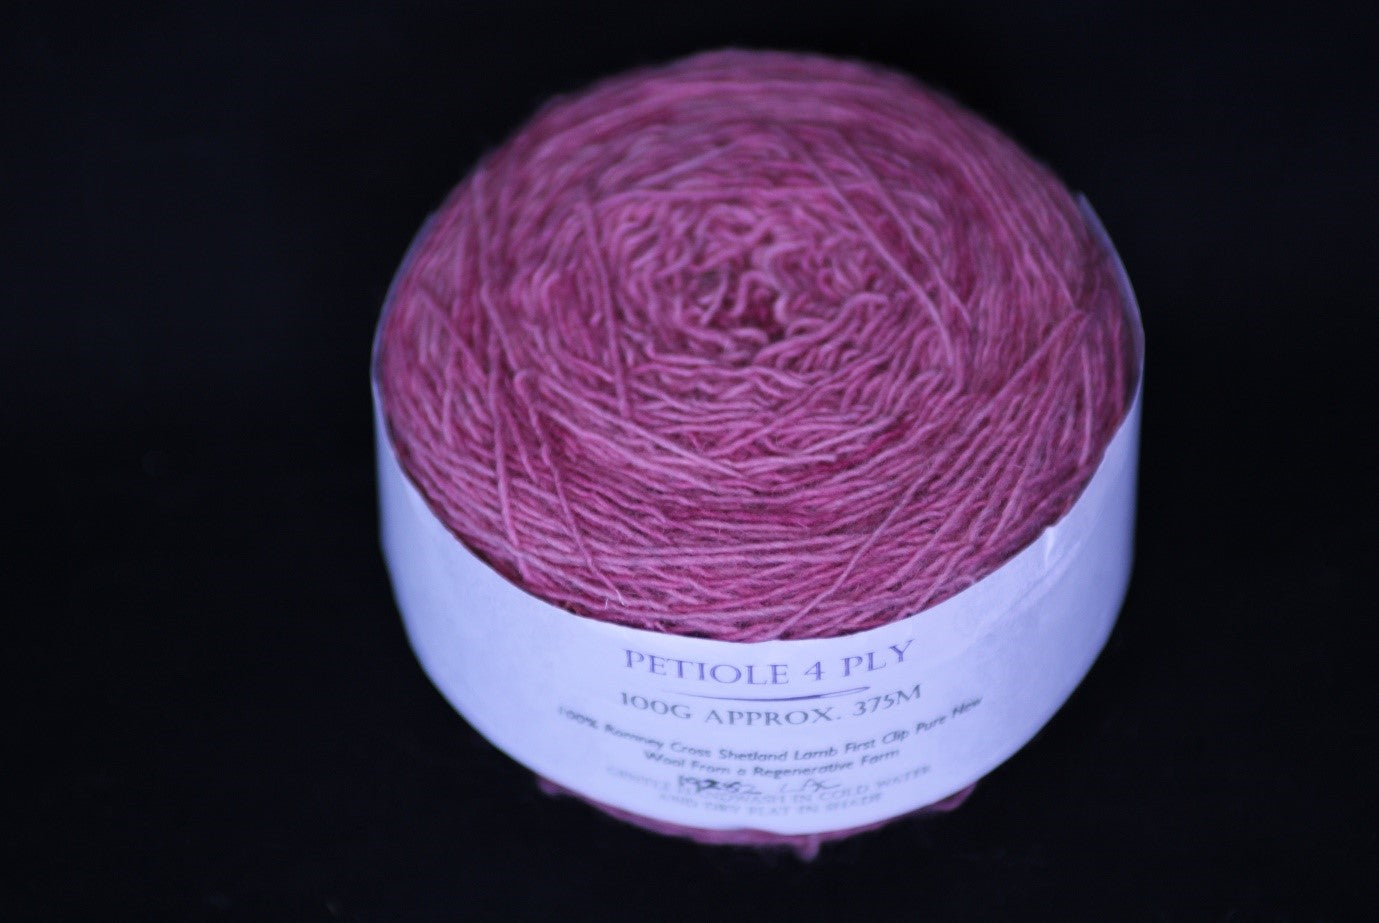 Marbled Pink four ply Romney Cross Shetland regenerative yarn